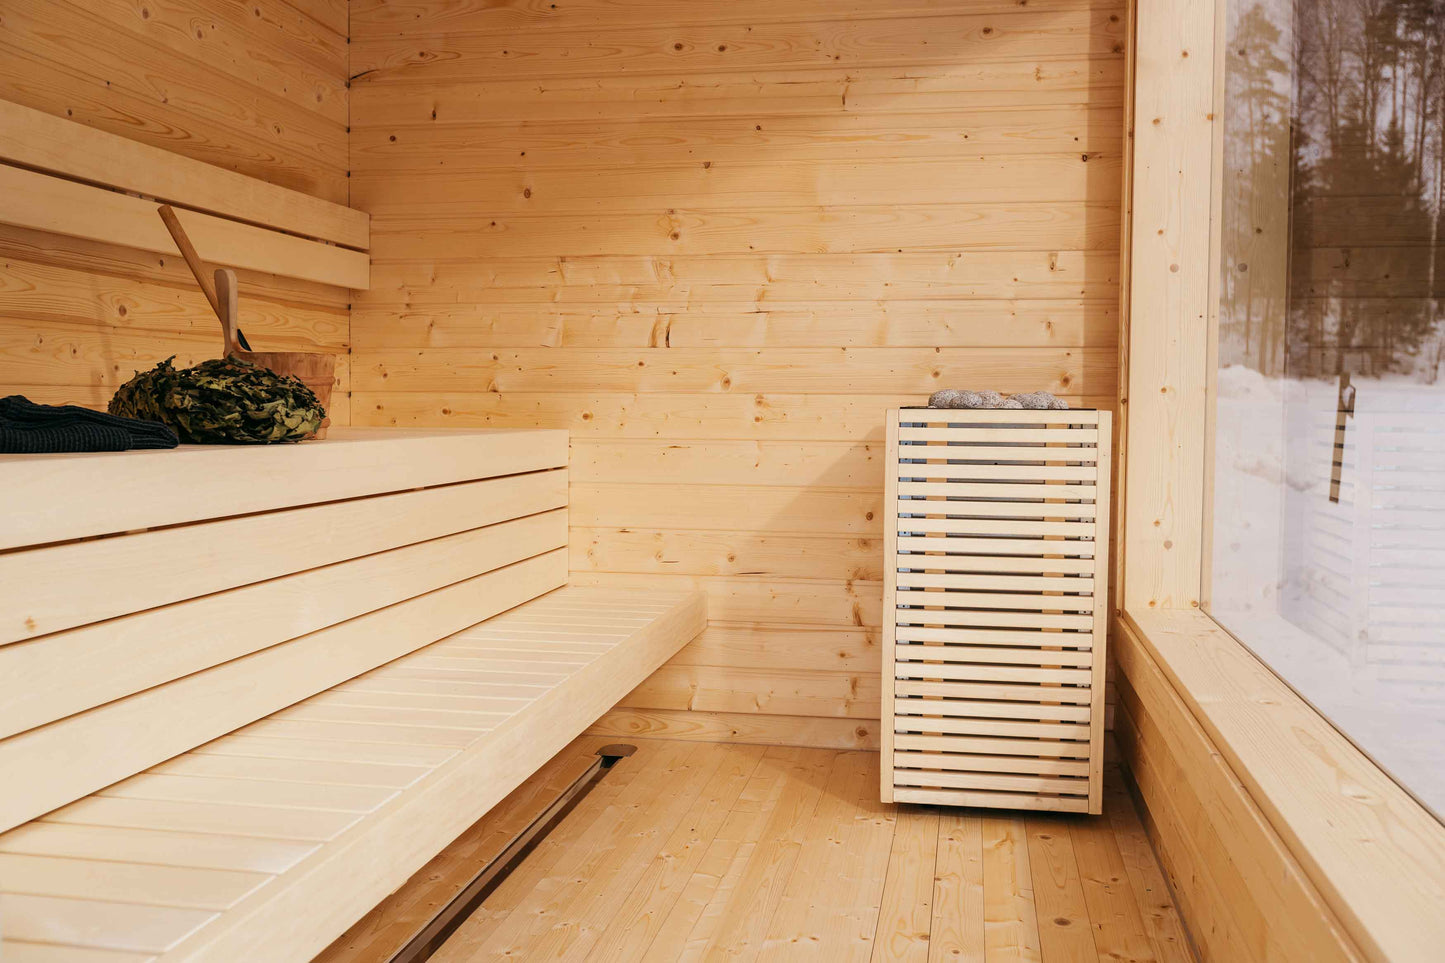 Huum Holzverkleidung | Paneele geeignet für Huum Core Saunaöfen (Farbe wählbar) | 4 Paneele